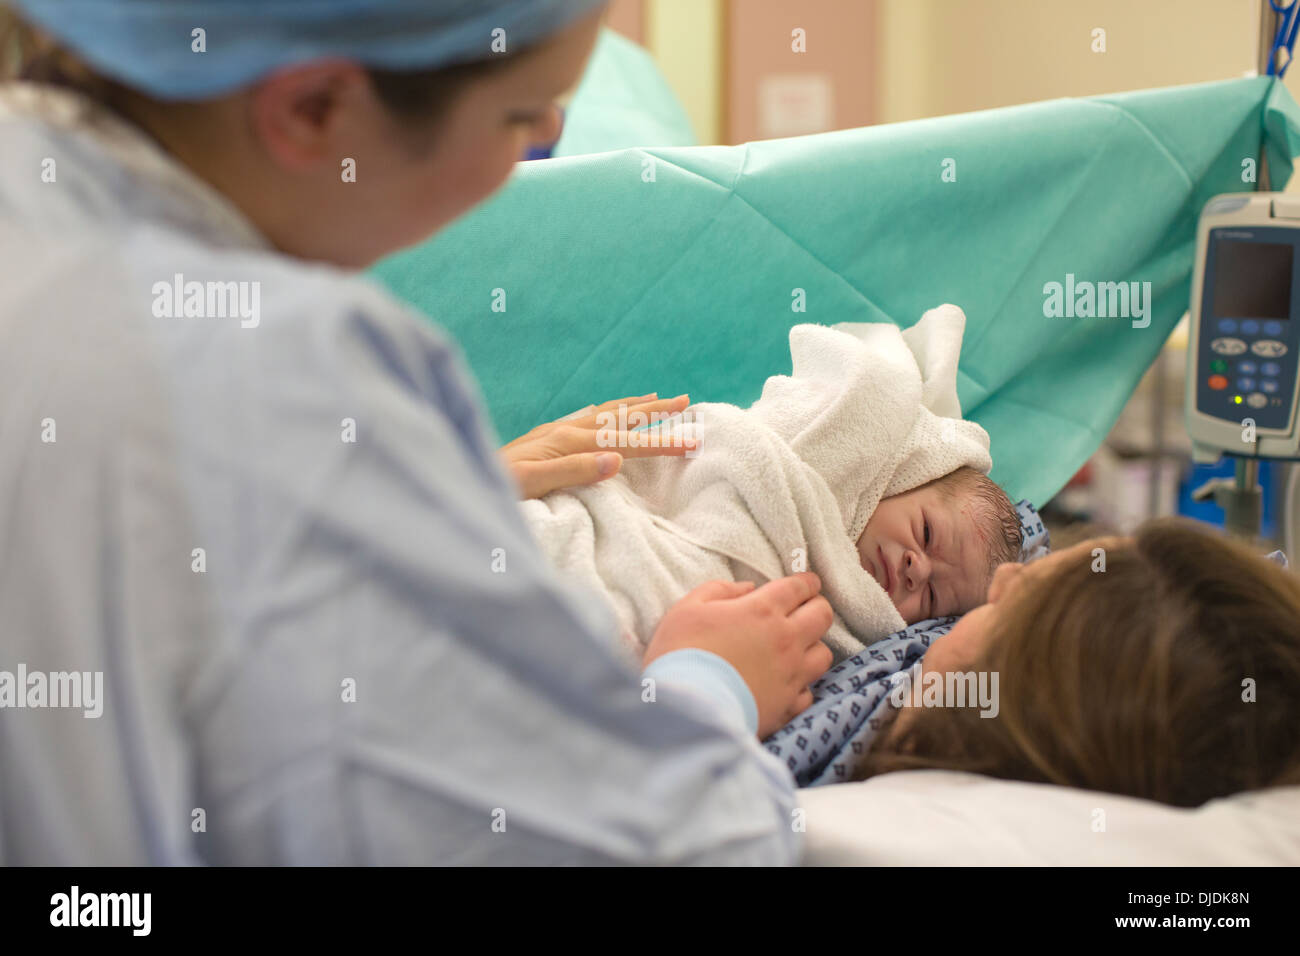 Bébé nouveau-né garçon d'être vérifié par des infirmières à l'hôpital théâtre de la maternité sur la salle de travail à l'hôpital, Kingston Upon Thames, Royaume-Uni Banque D'Images